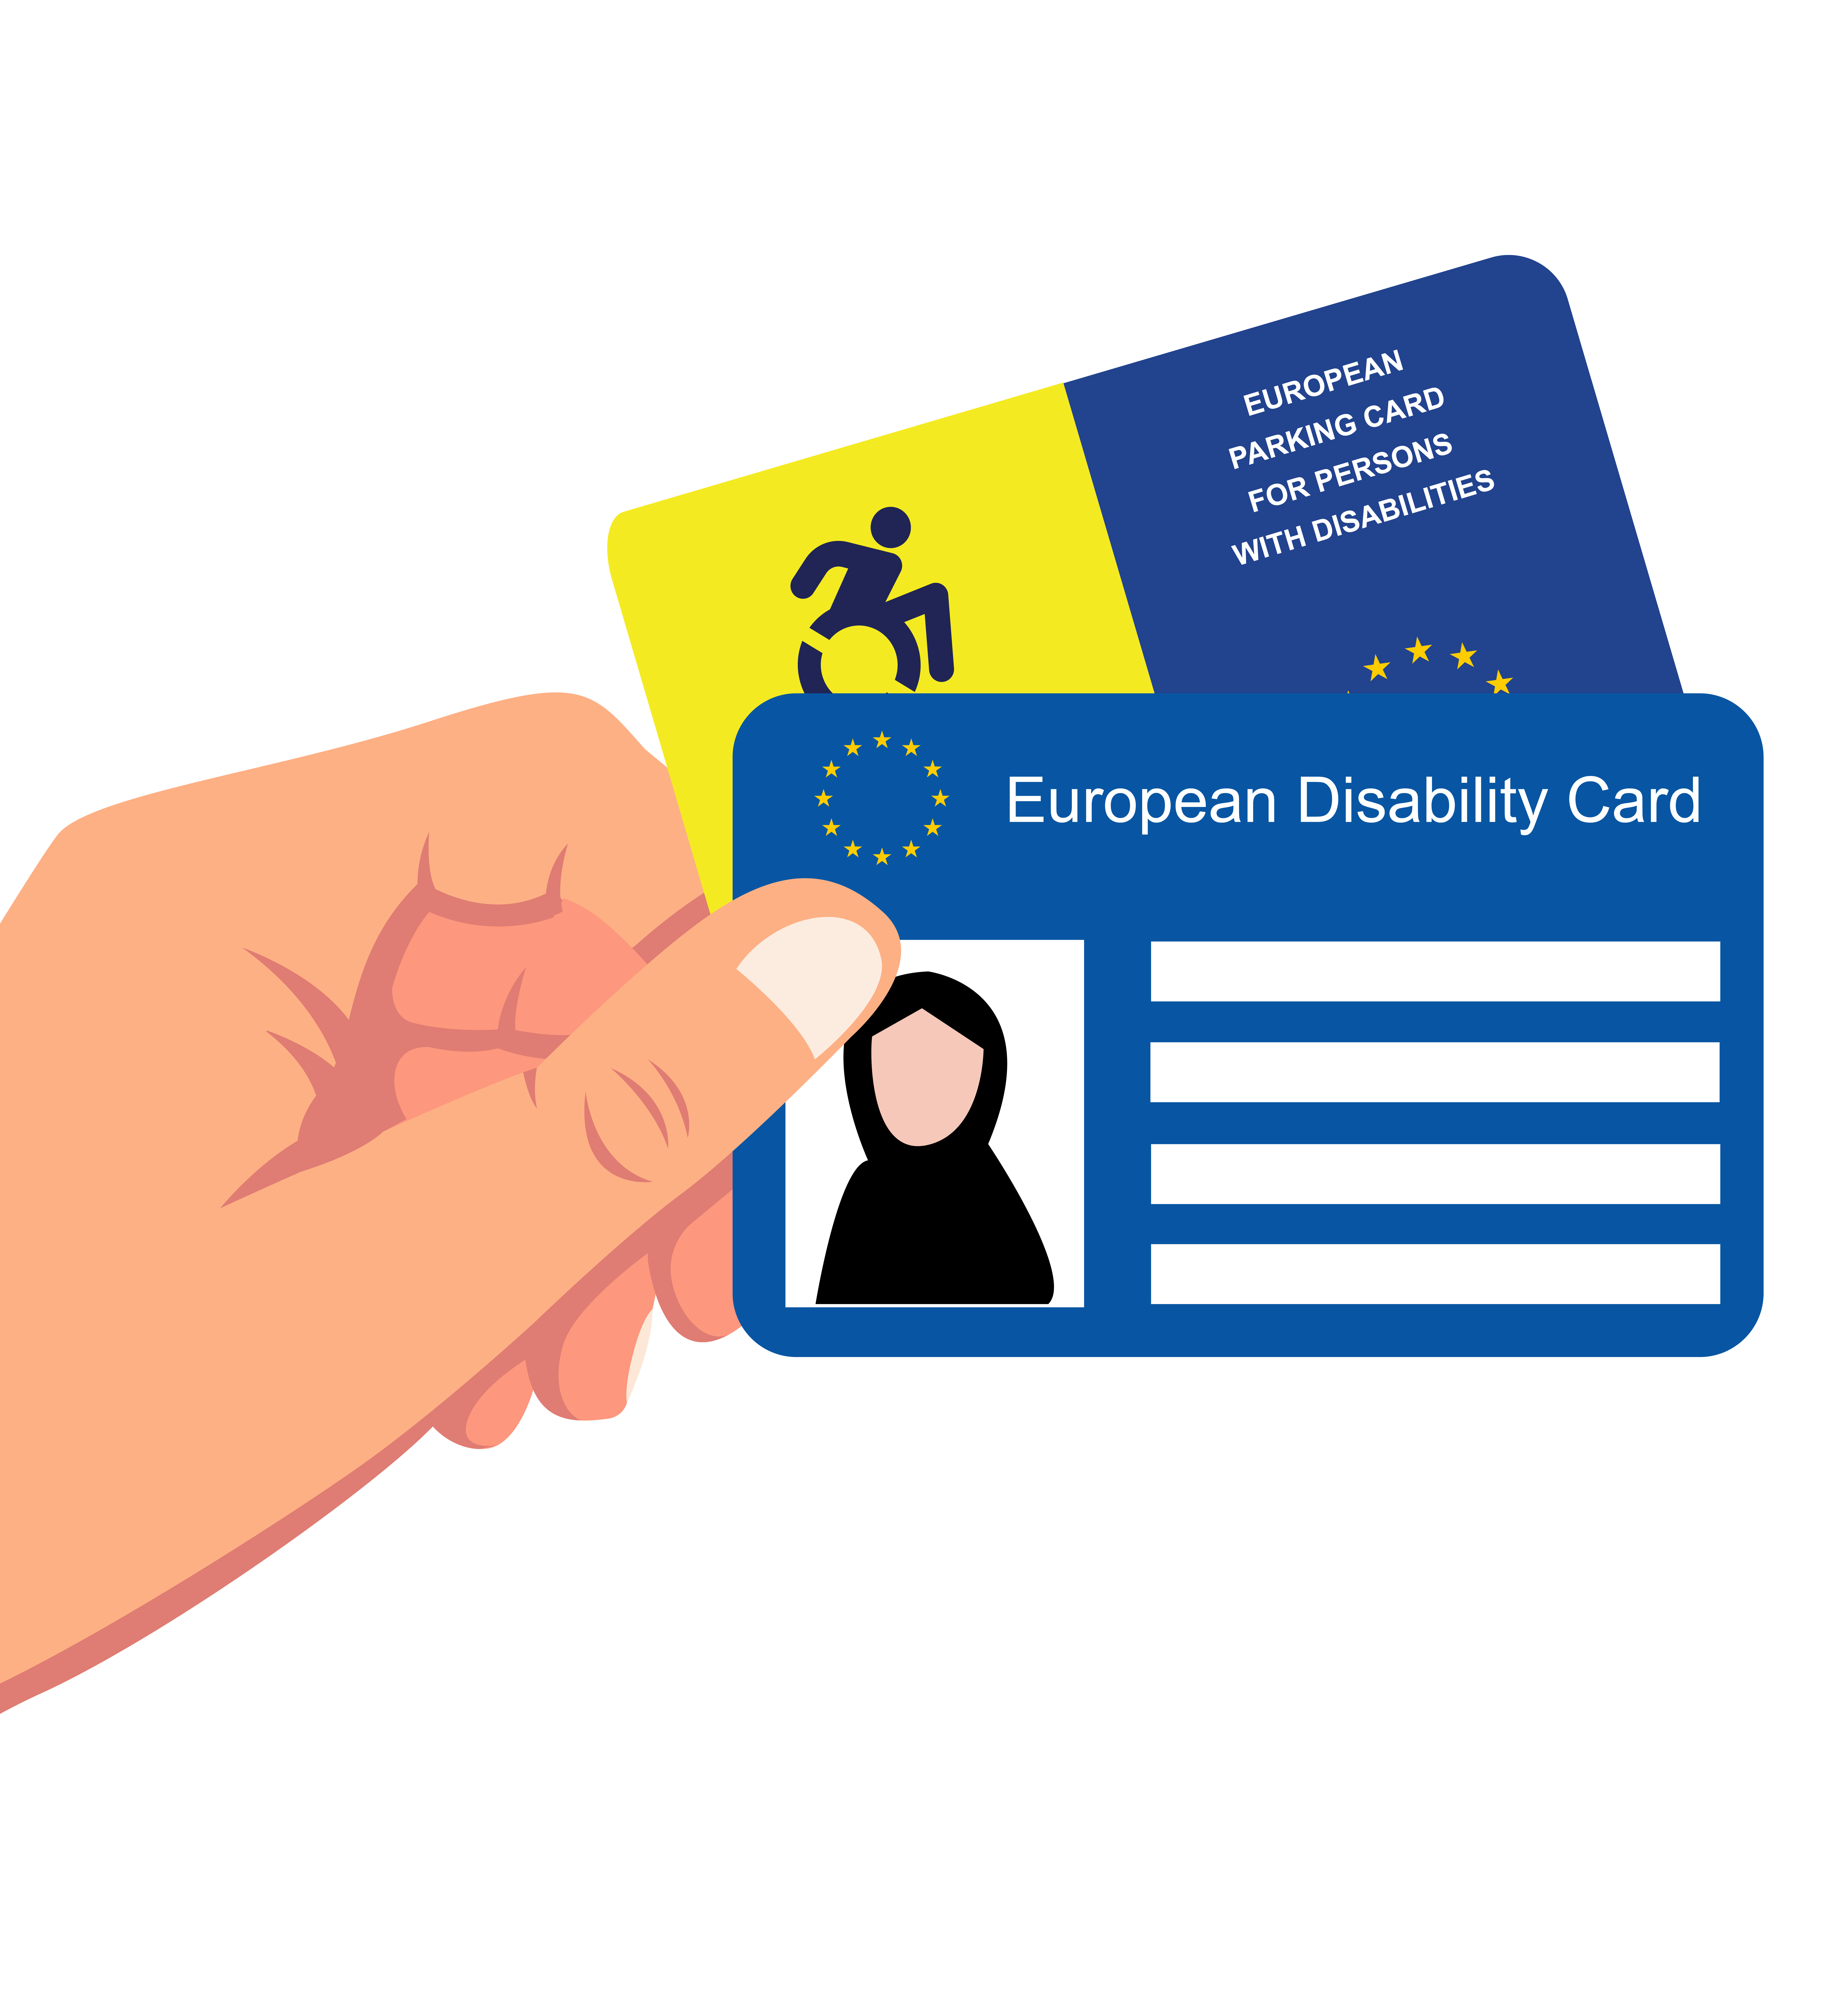 Hand hält einen Europäischen Behindertenausweis und einen Europäischen Parkausweis